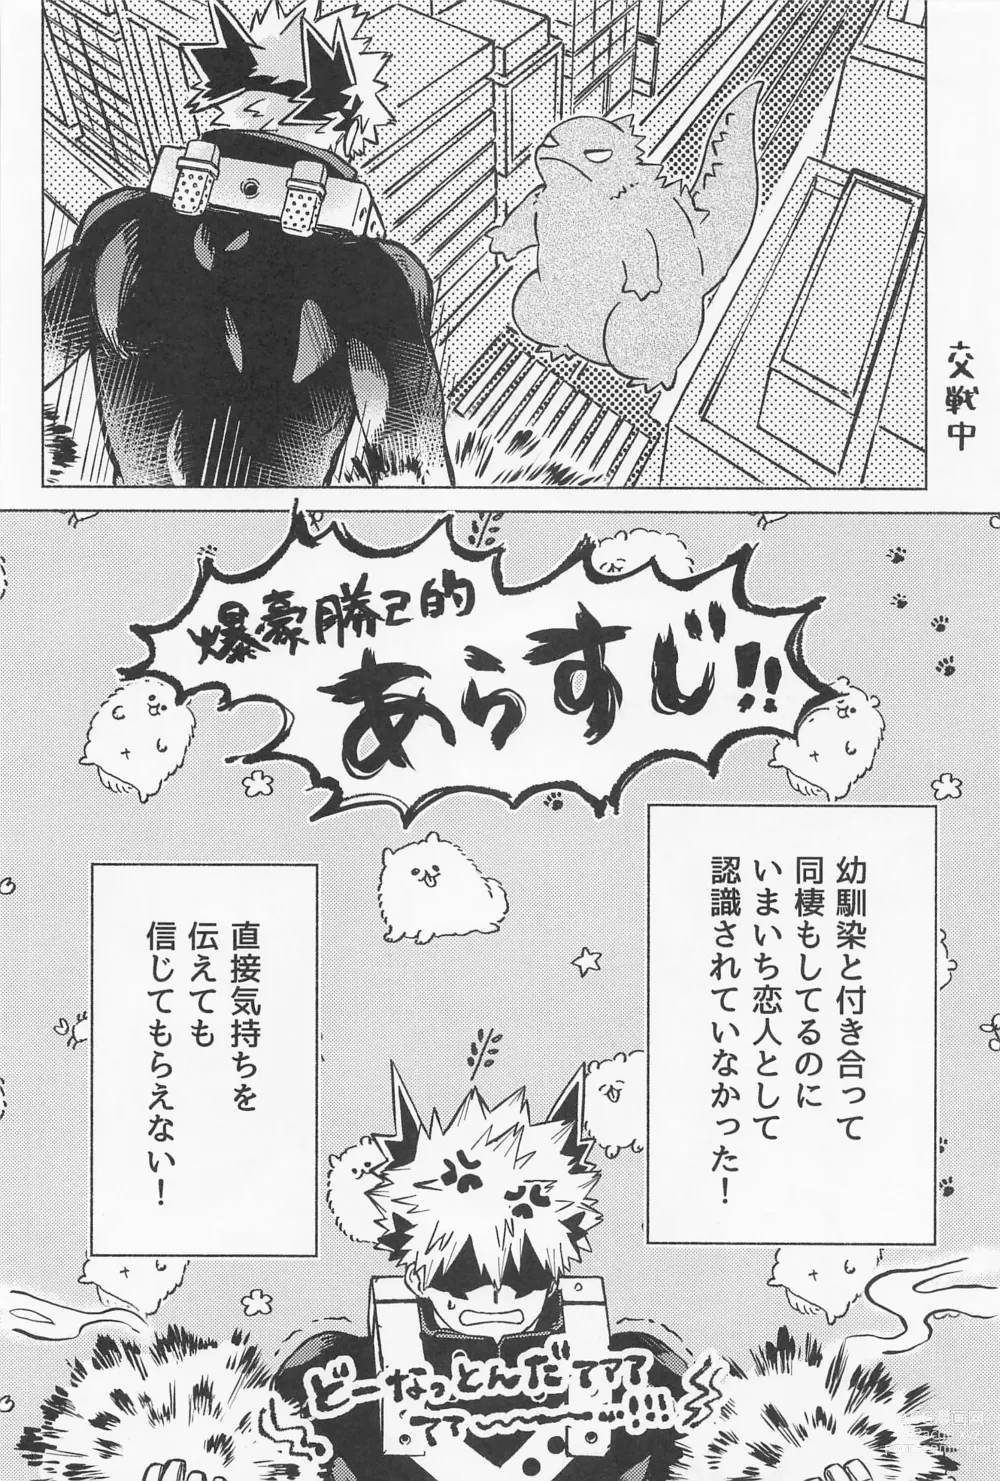 Page 7 of doujinshi OSANANA UKARE-PUNCH NIKKI 2.0